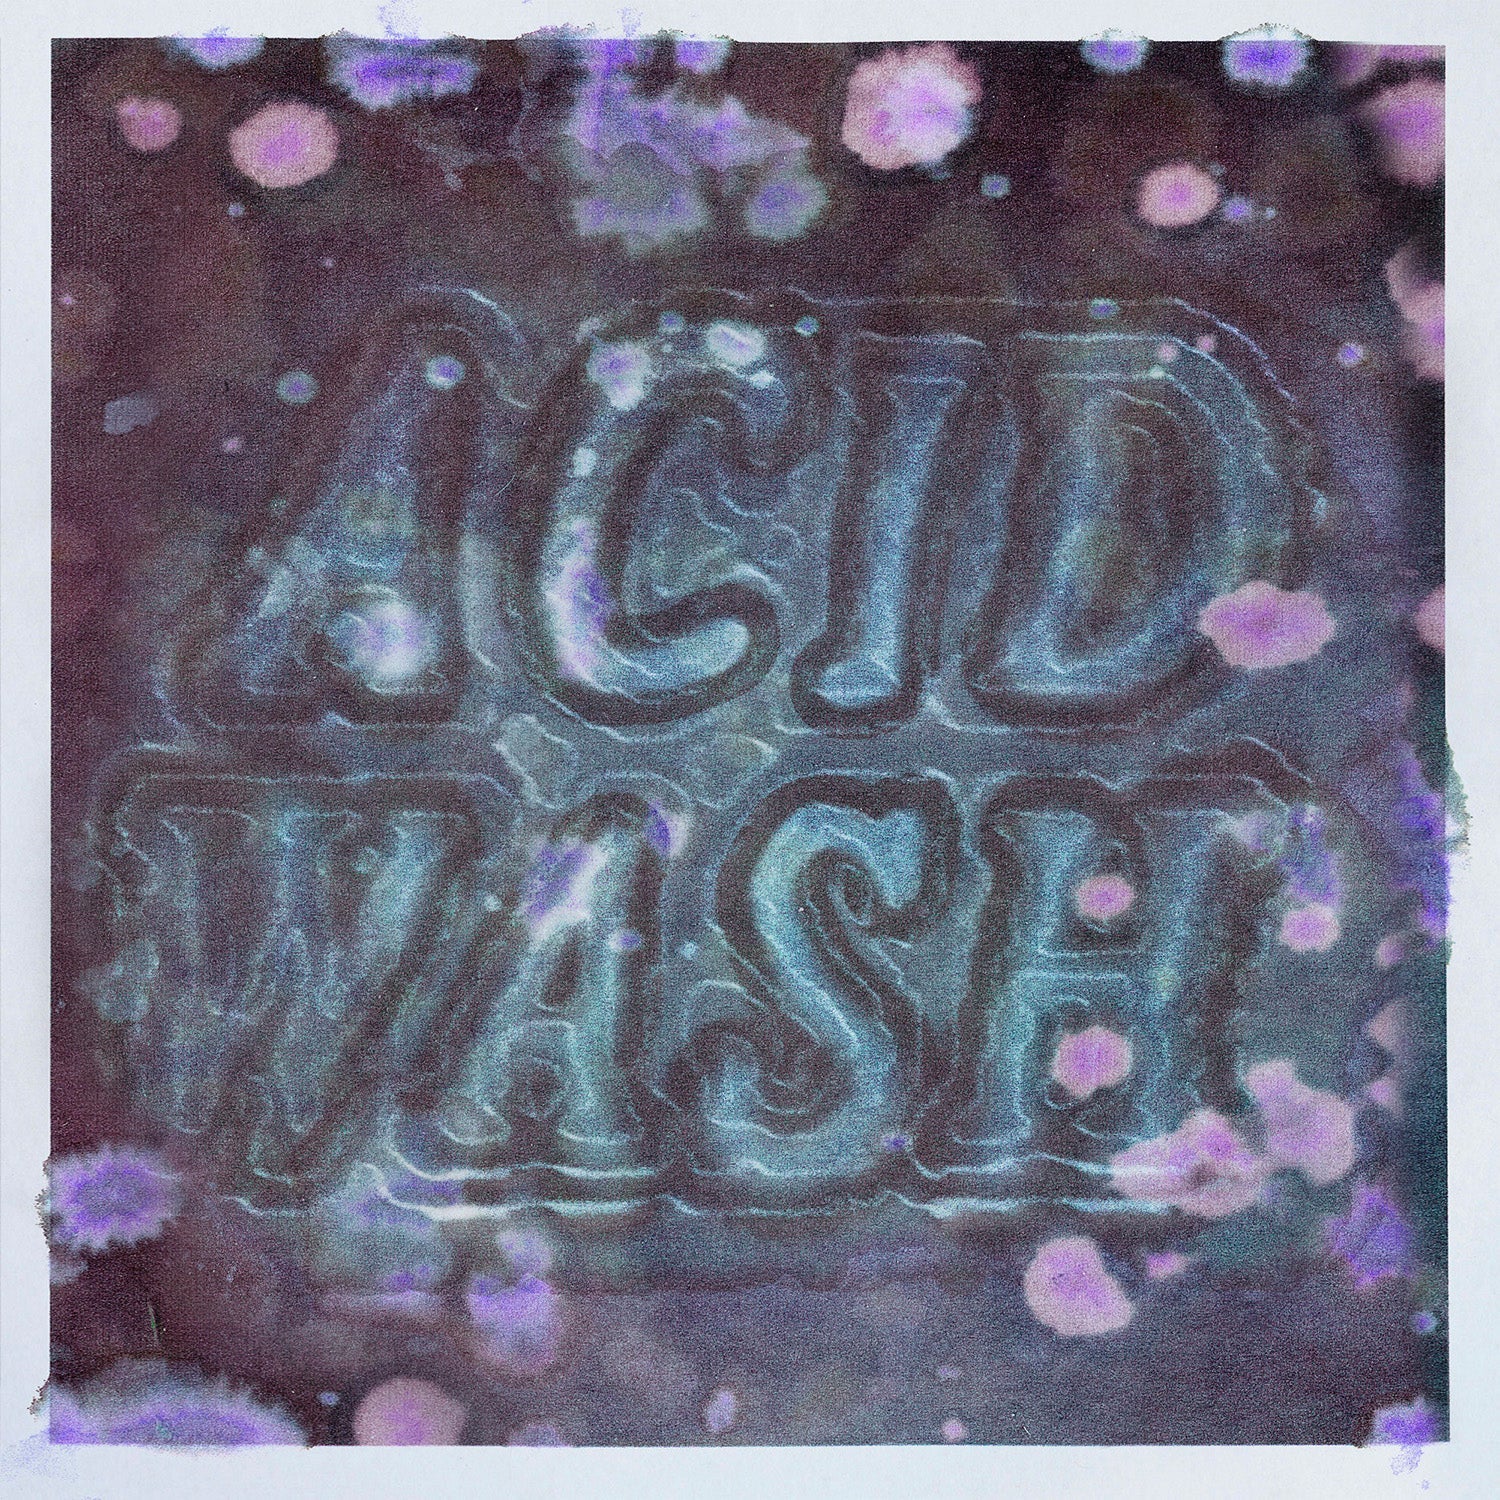 ACID WASH - Vintage Grunge Paper Textures